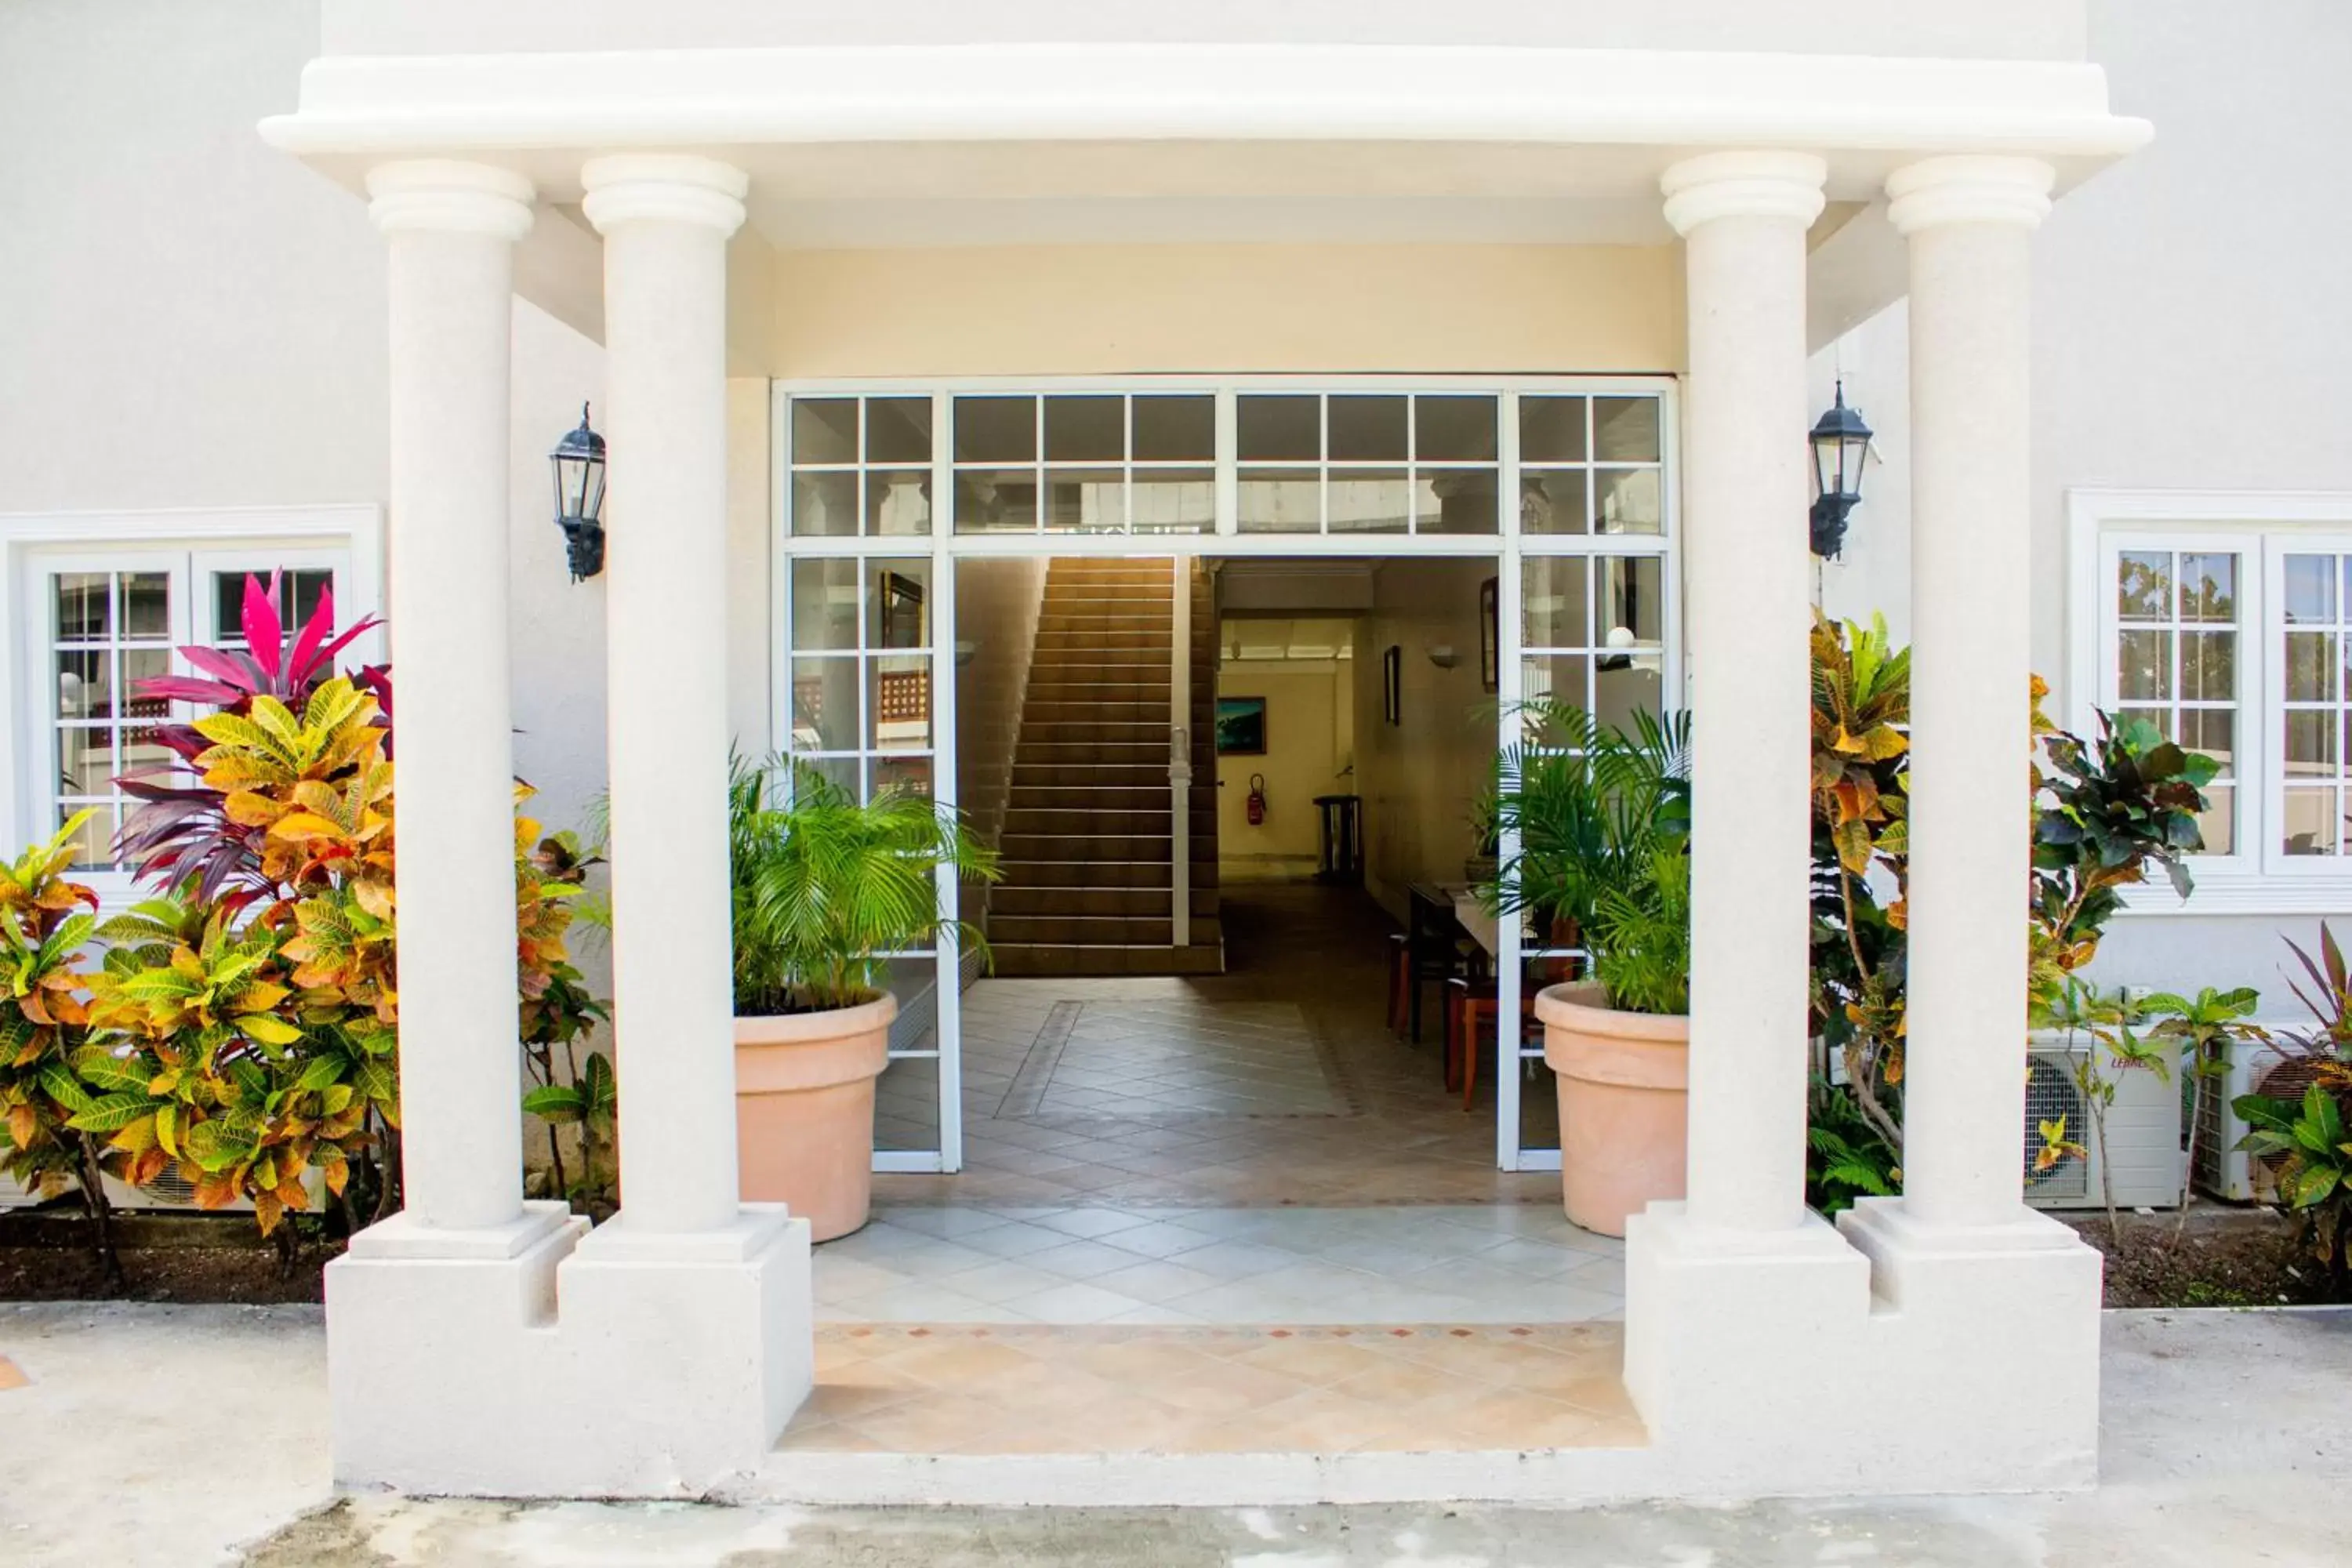 Facade/entrance in Bay Gardens Hotel